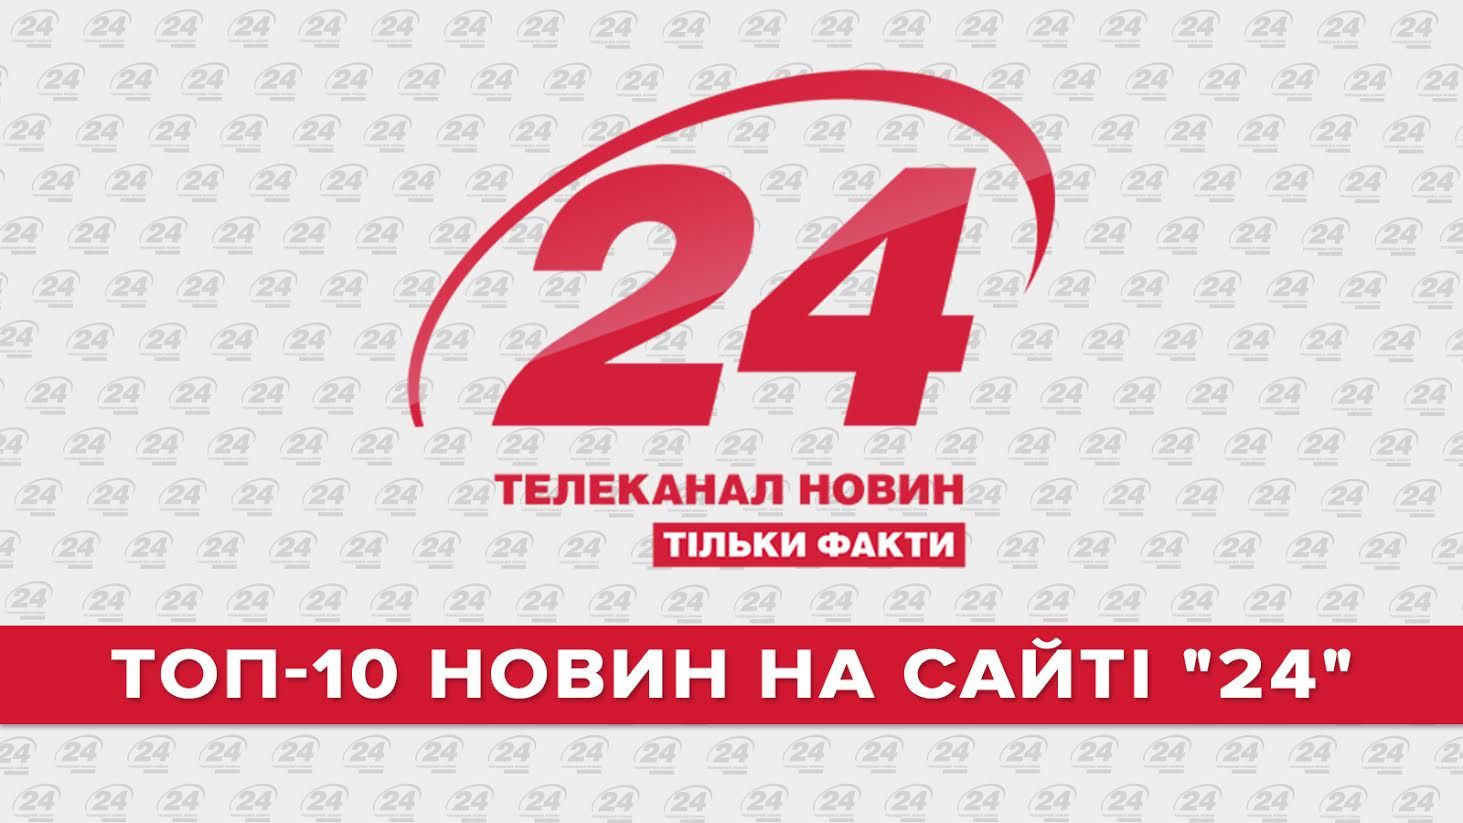 ТОП-10 новостей на сайте "24" за 2015 год